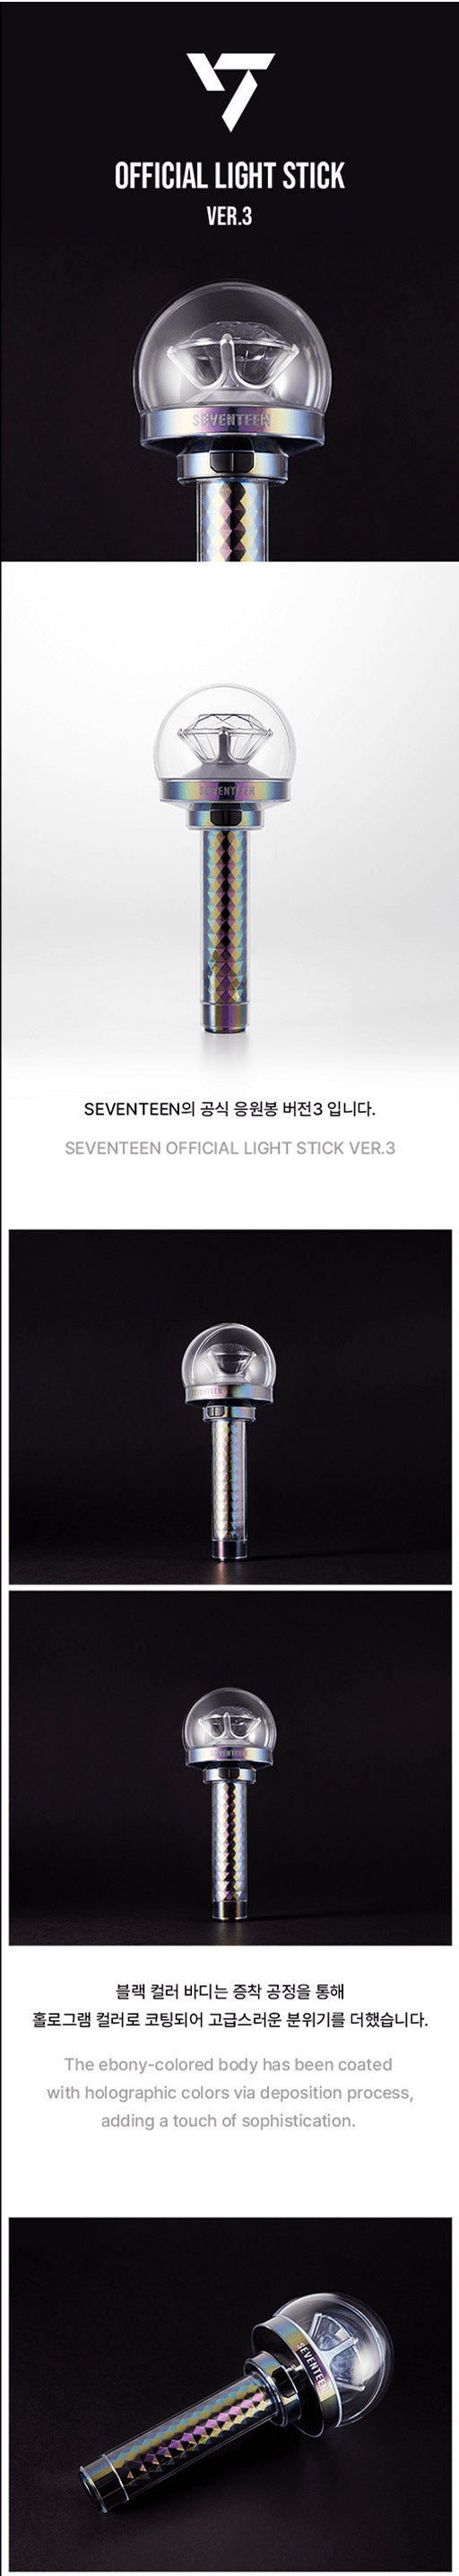 Details - SEVENTEEN Official Light stick ver.3